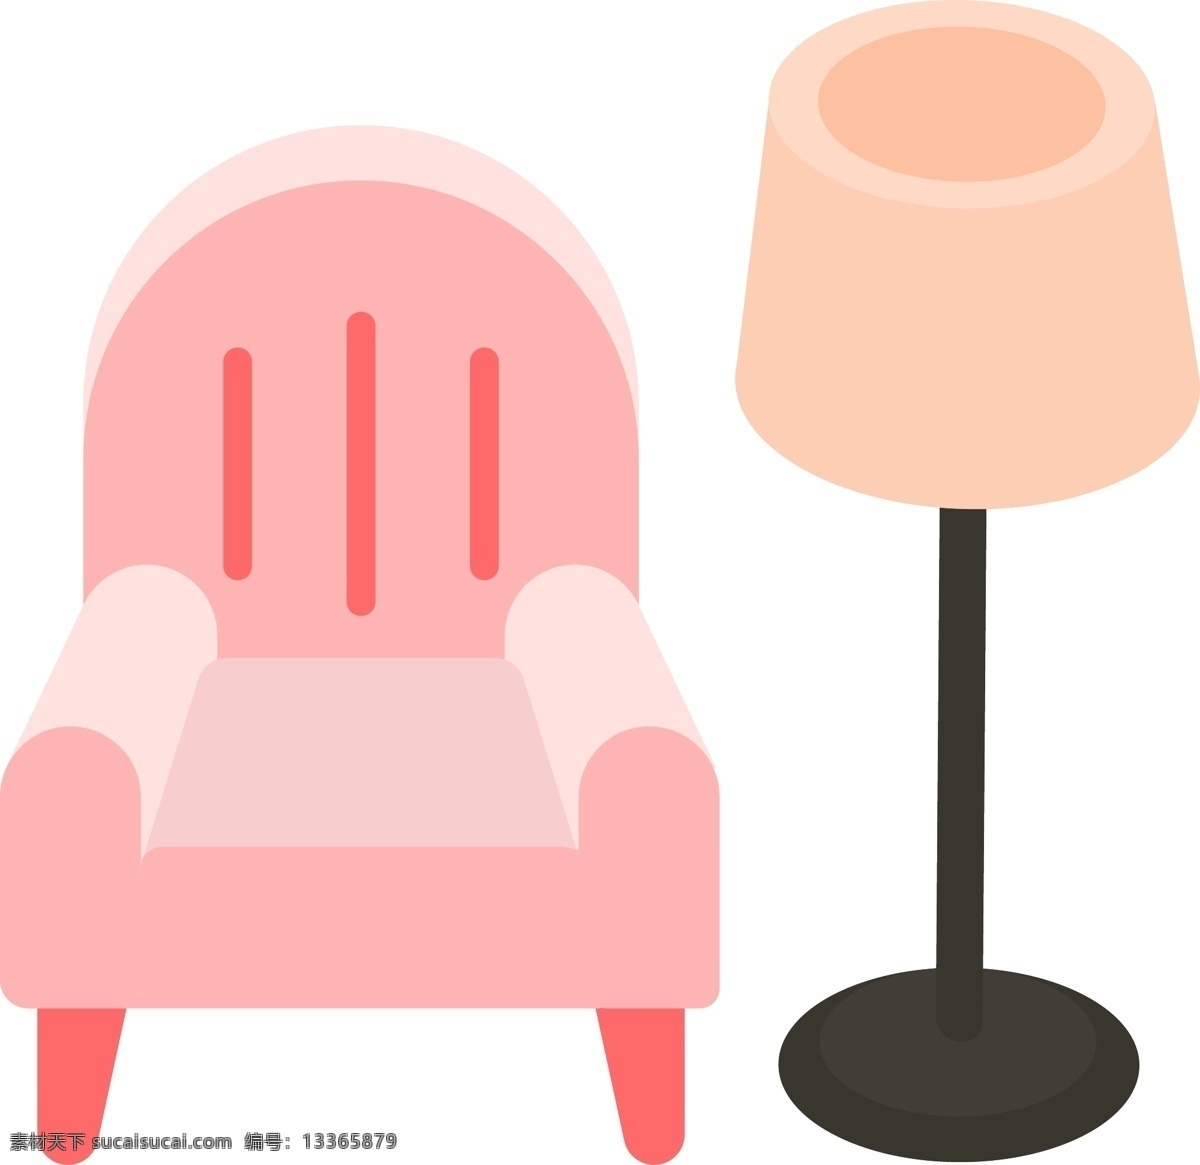 简约 风格 生活 家居 元素 家具 装修 装饰 沙发 日常 休闲 落地灯